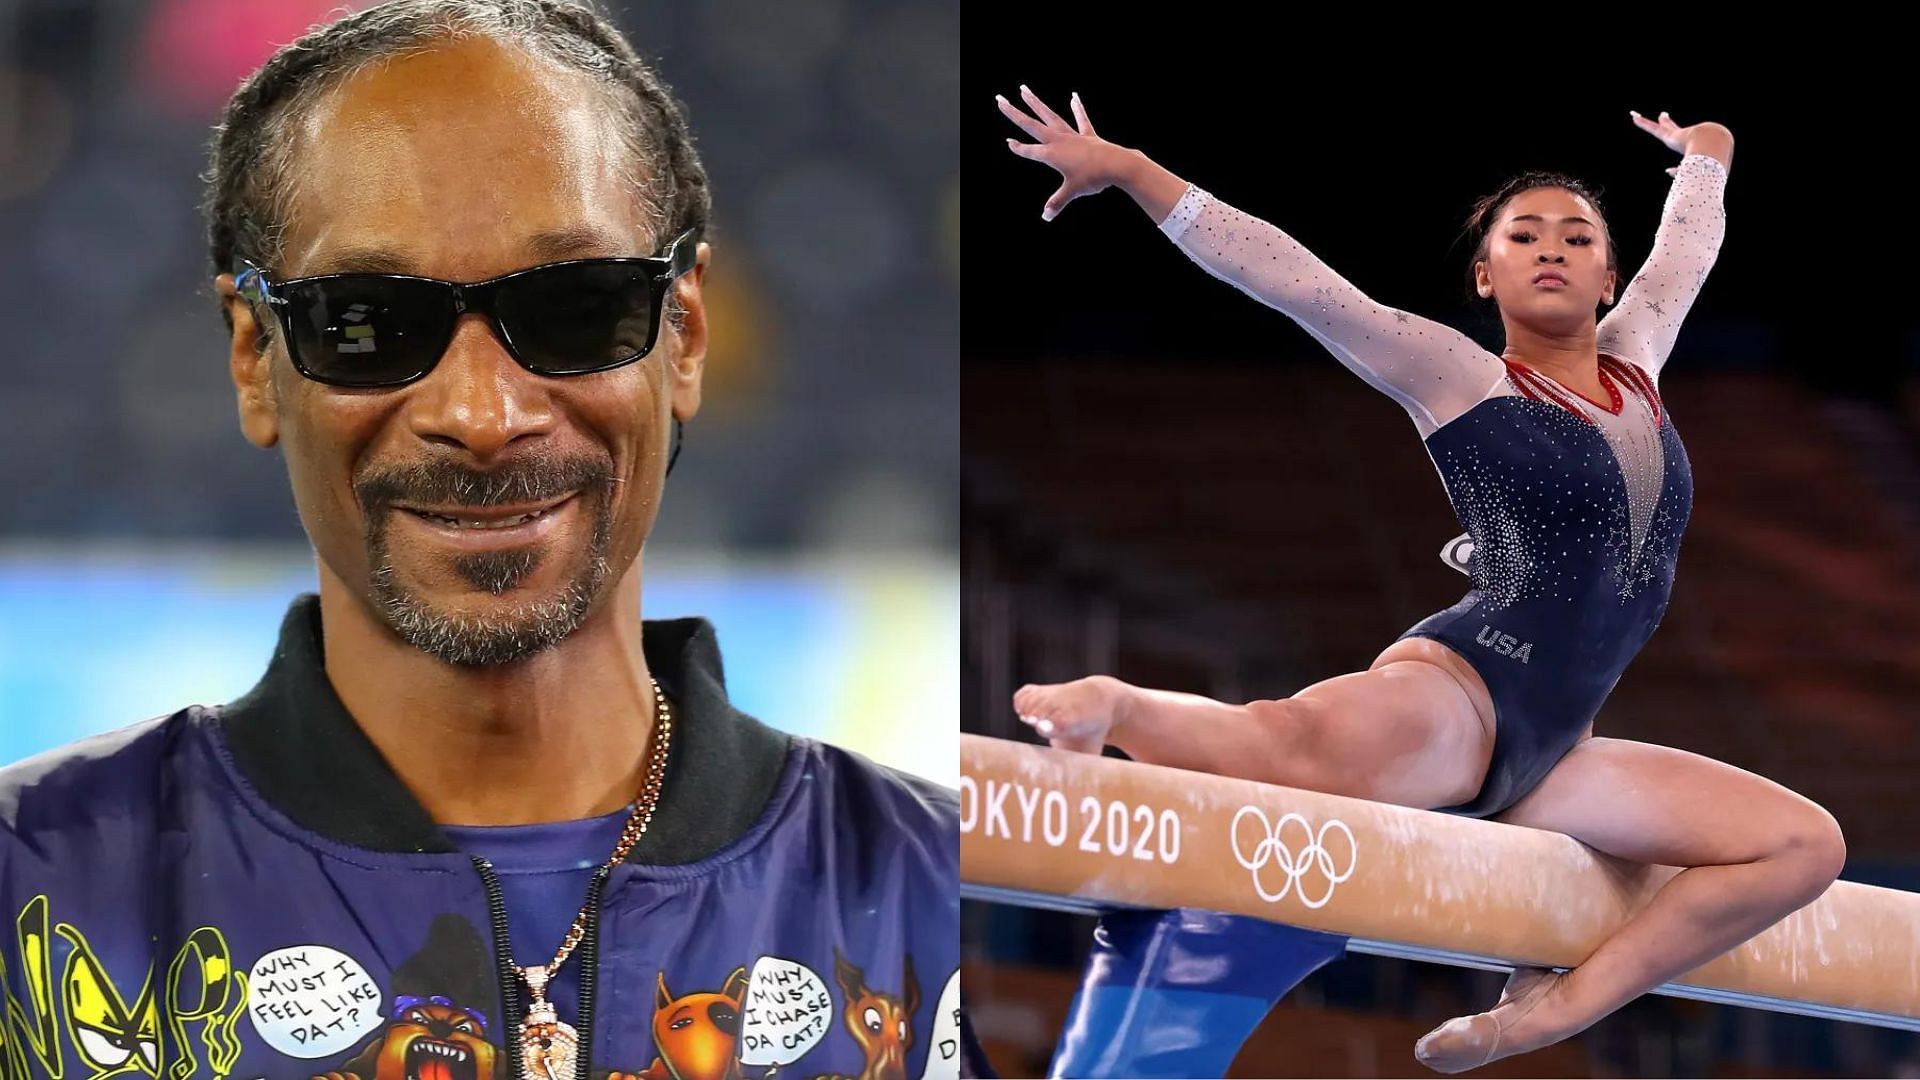 Suni Lee and Snoop Dogg (Image via Sportskeeda)